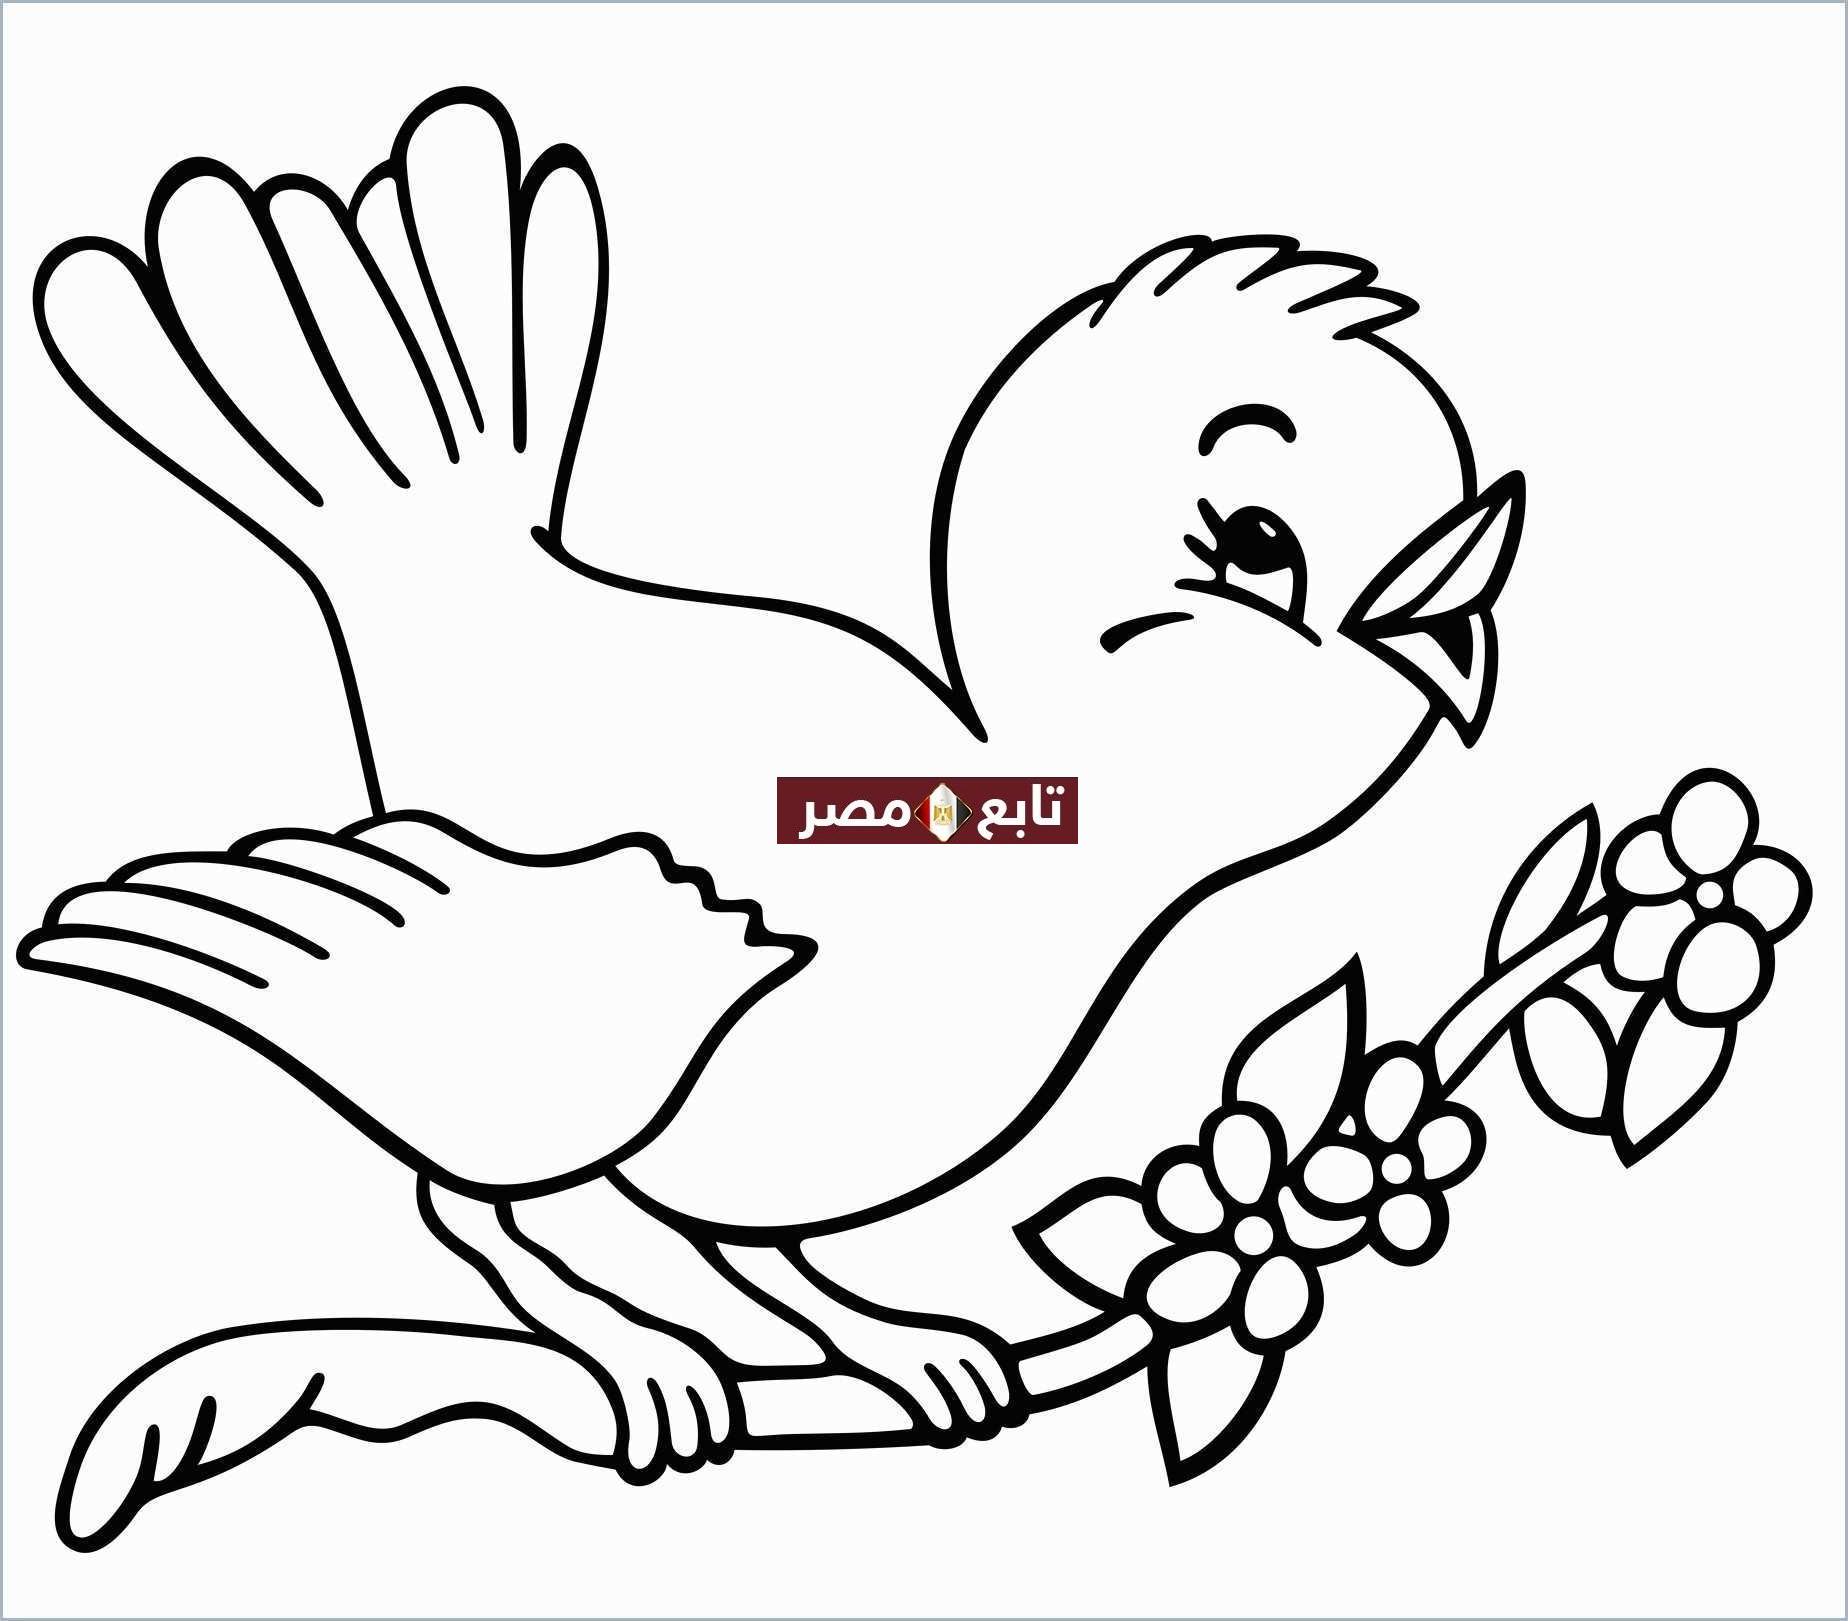 “رسومات” صور تلوين للأطفال pdf مجموعة طيور وحيوانات جاهزة للطباعة